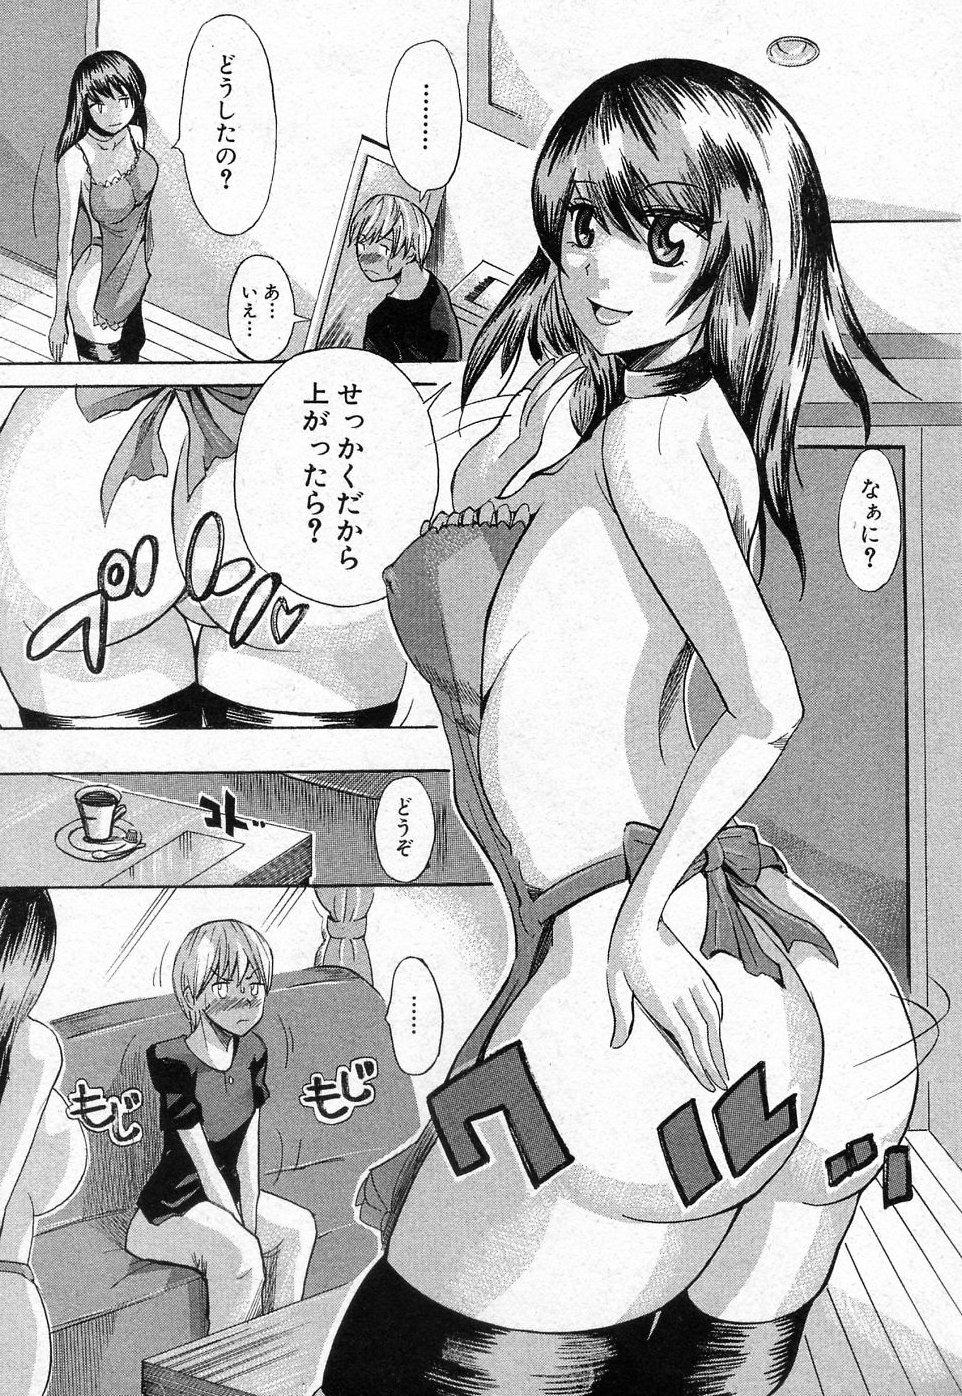 4some Tonari no Reika san Interview - Page 5